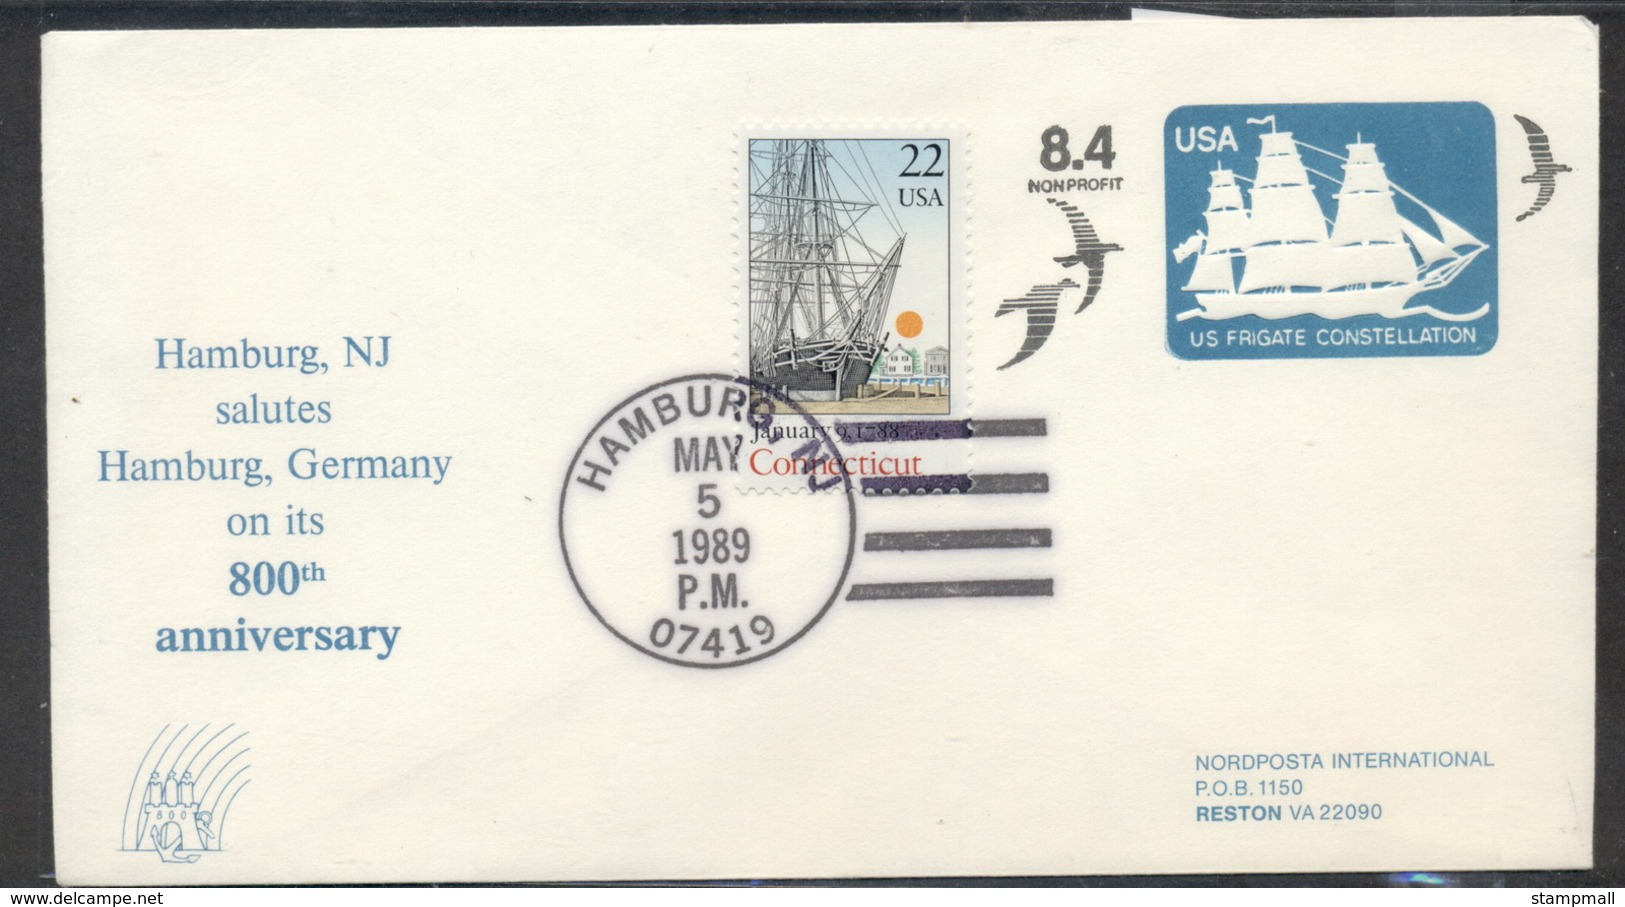 USA 1980 Frigate Constellation PSE, Hamburg Souvenir Cover - Enveloppes évenementielles